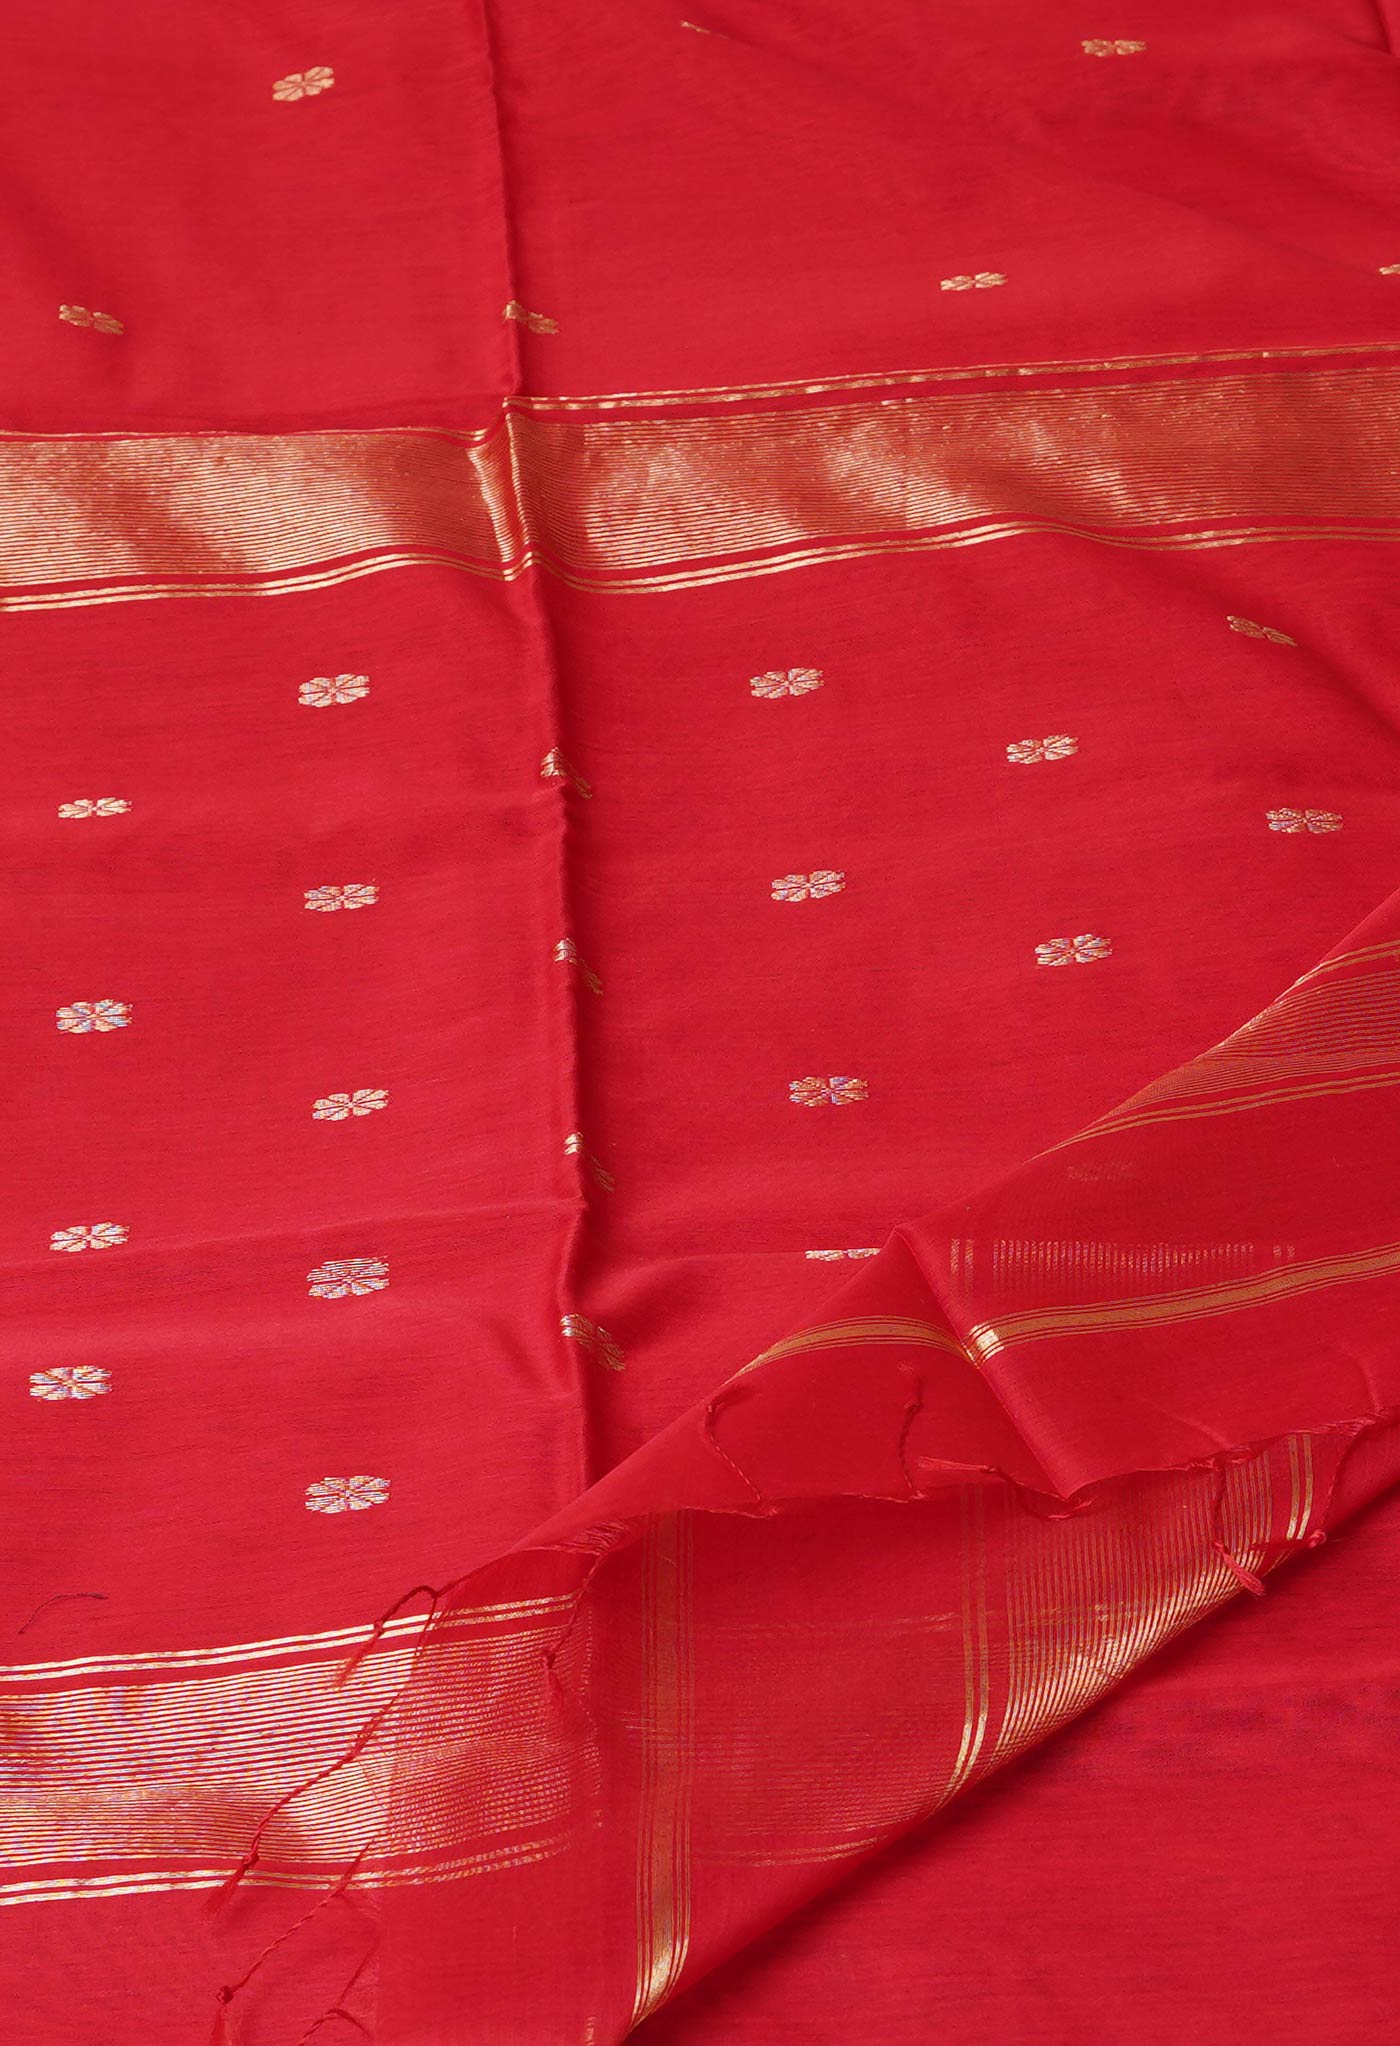 Red Pure Handloom Maheshwari Sico Saree